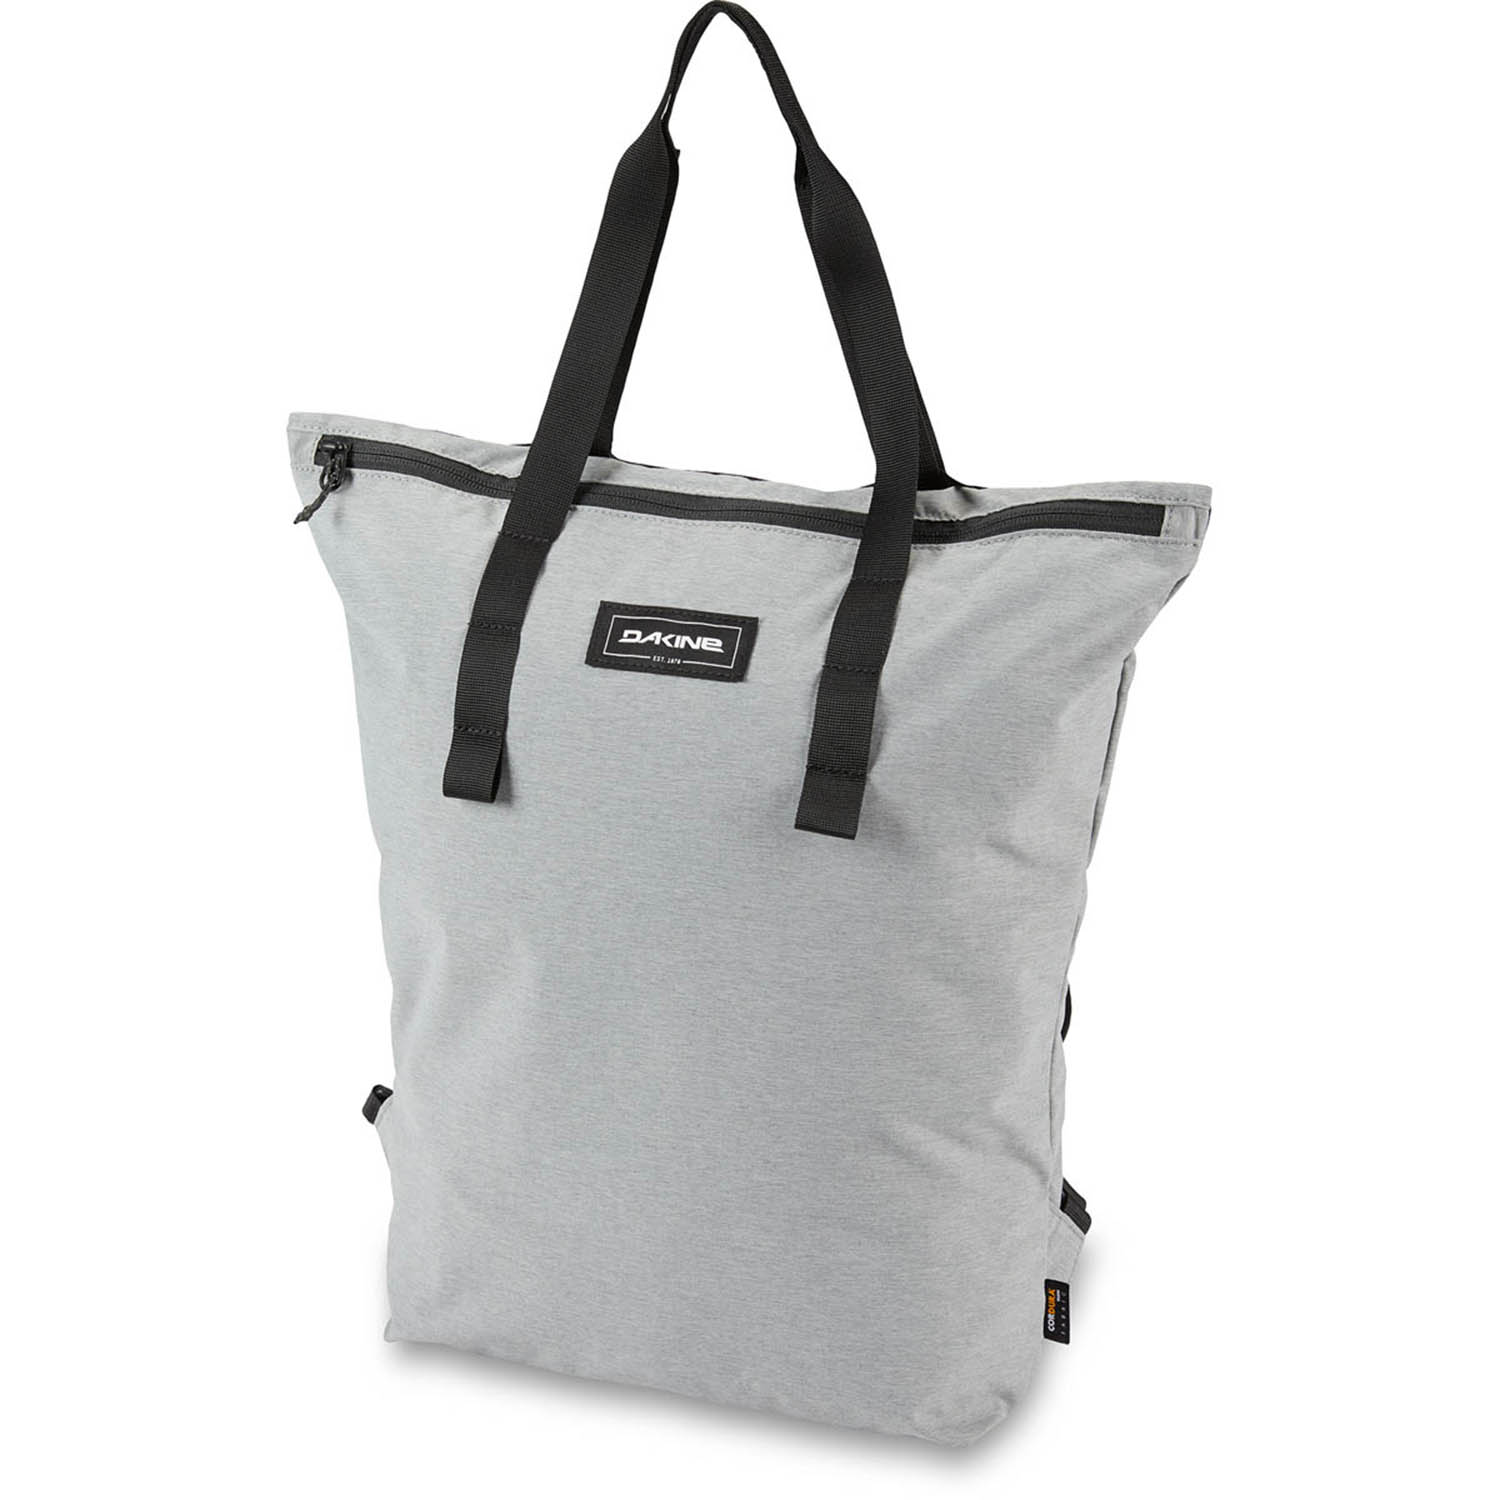 Dakine Packable Tote Pack 18L verstaubare 2in1 Tasche Daybag von Dakine